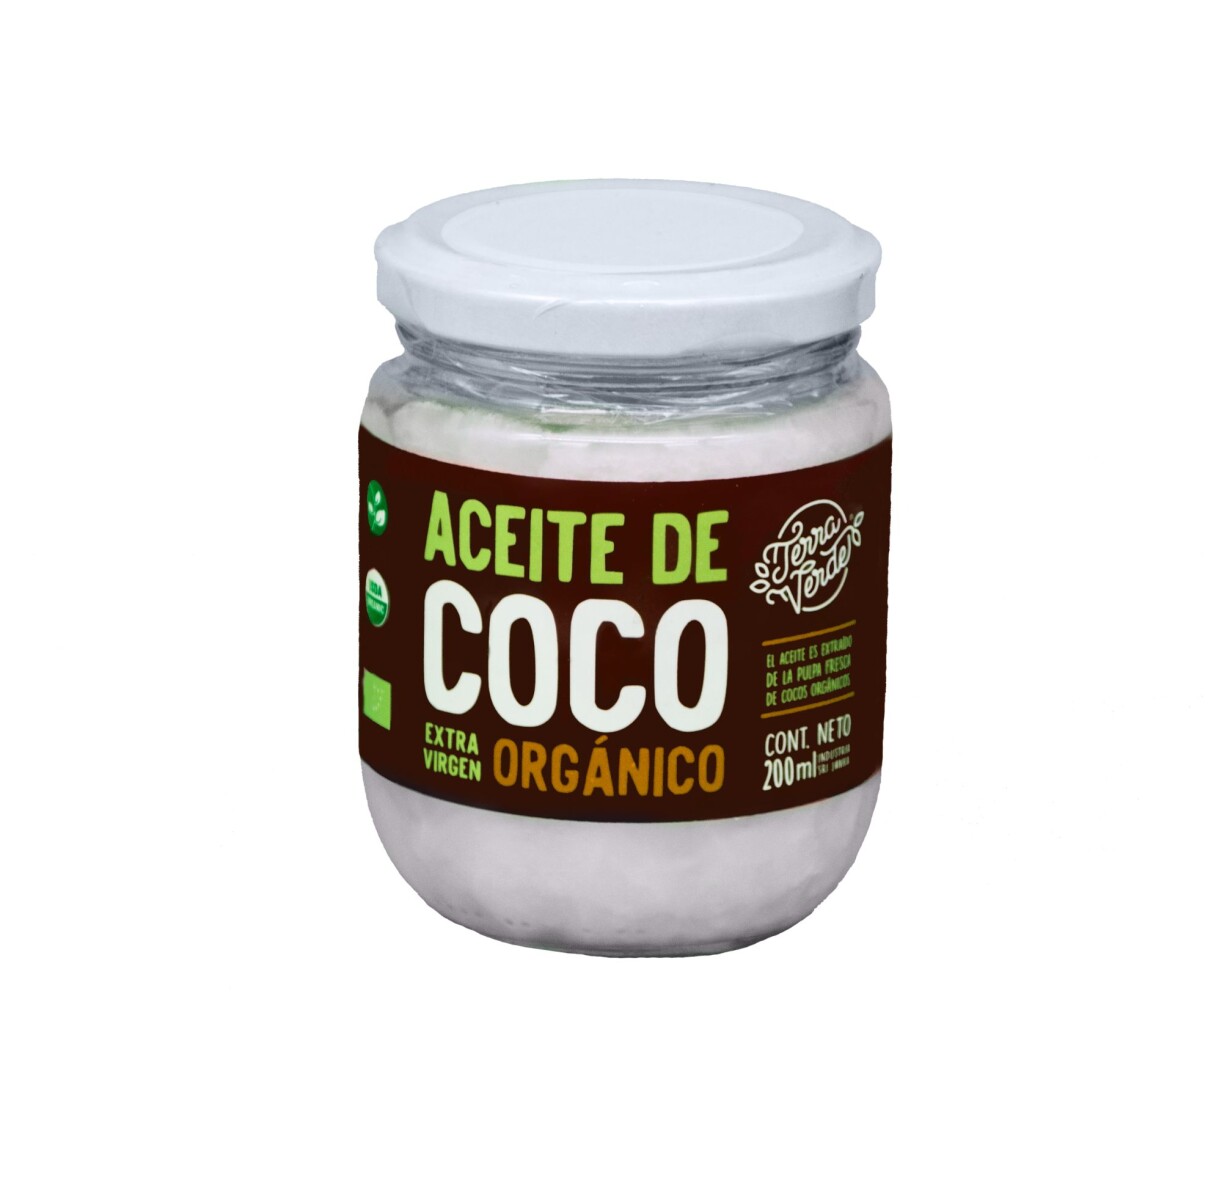 Aceite de coco Terra Verde Orgánico 200ml 